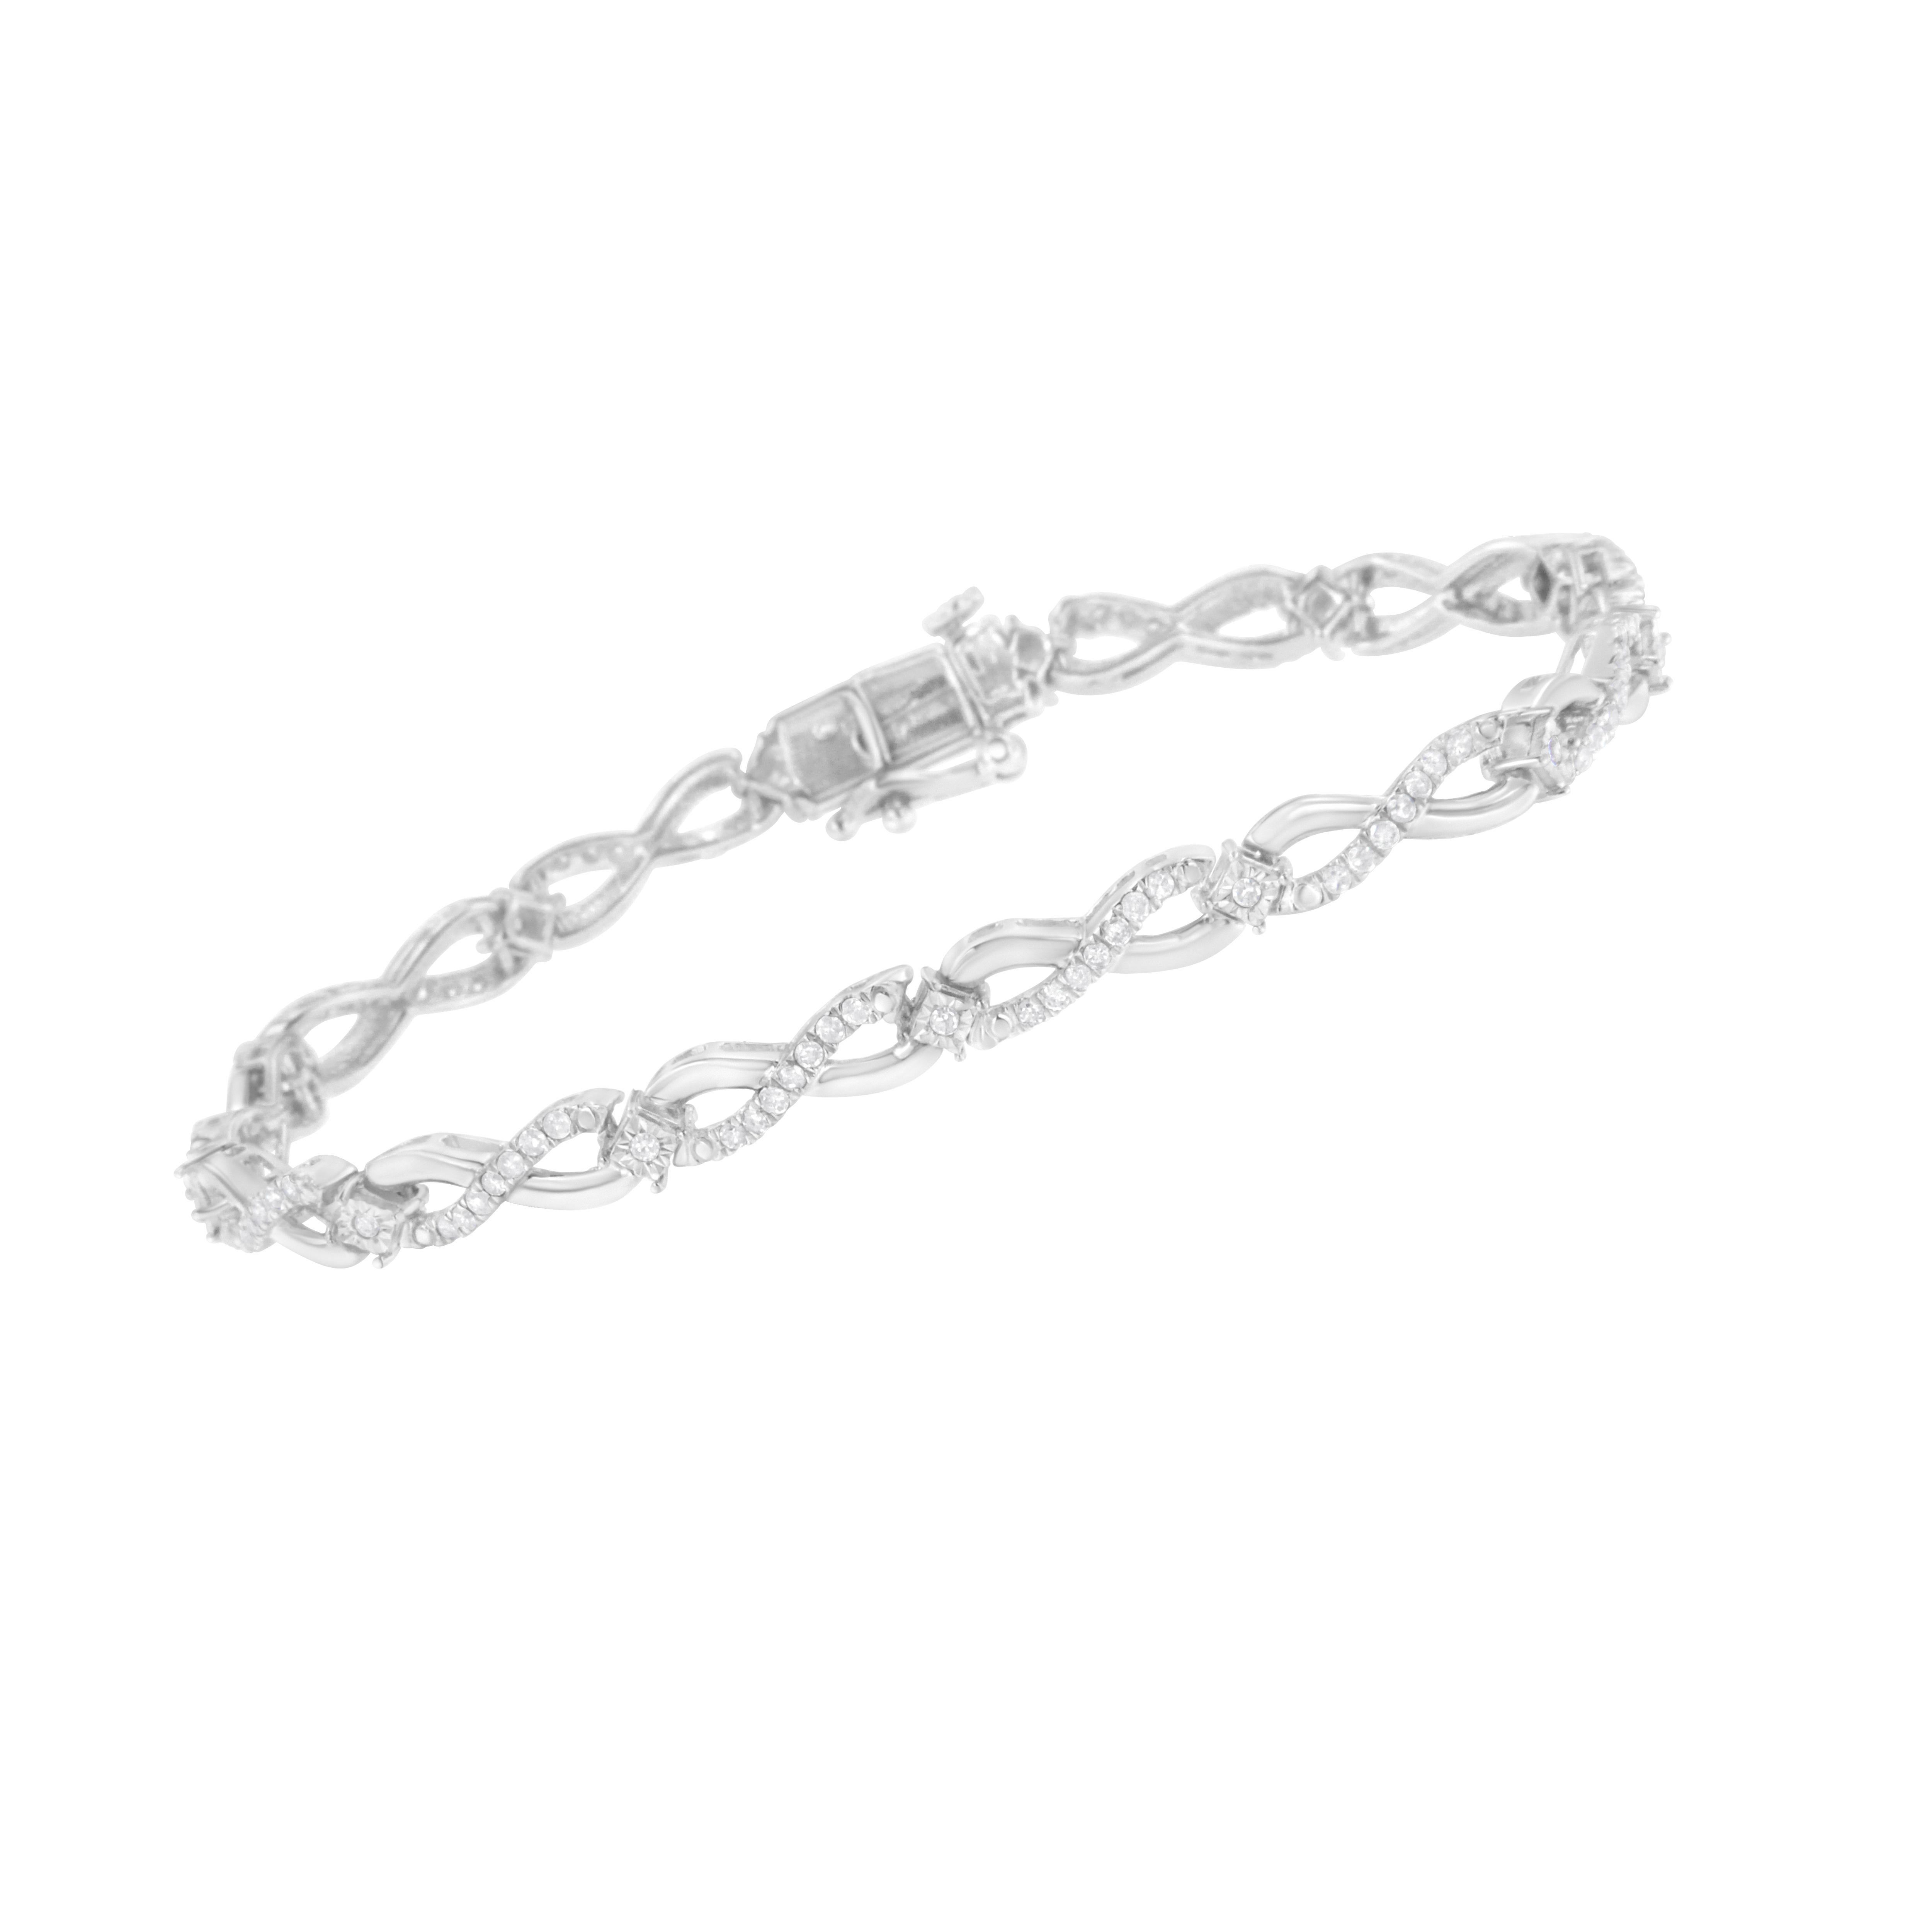 Cent trois diamants ronds pesant 1 ct TDW éblouissent ce bracelet en argent sterling. Des rubans souples s'enroulent en boucle et créent un symbole de l'infini. Des diamants ronds scintillants sont incrustés sur l'un des côtés du symbole. Des